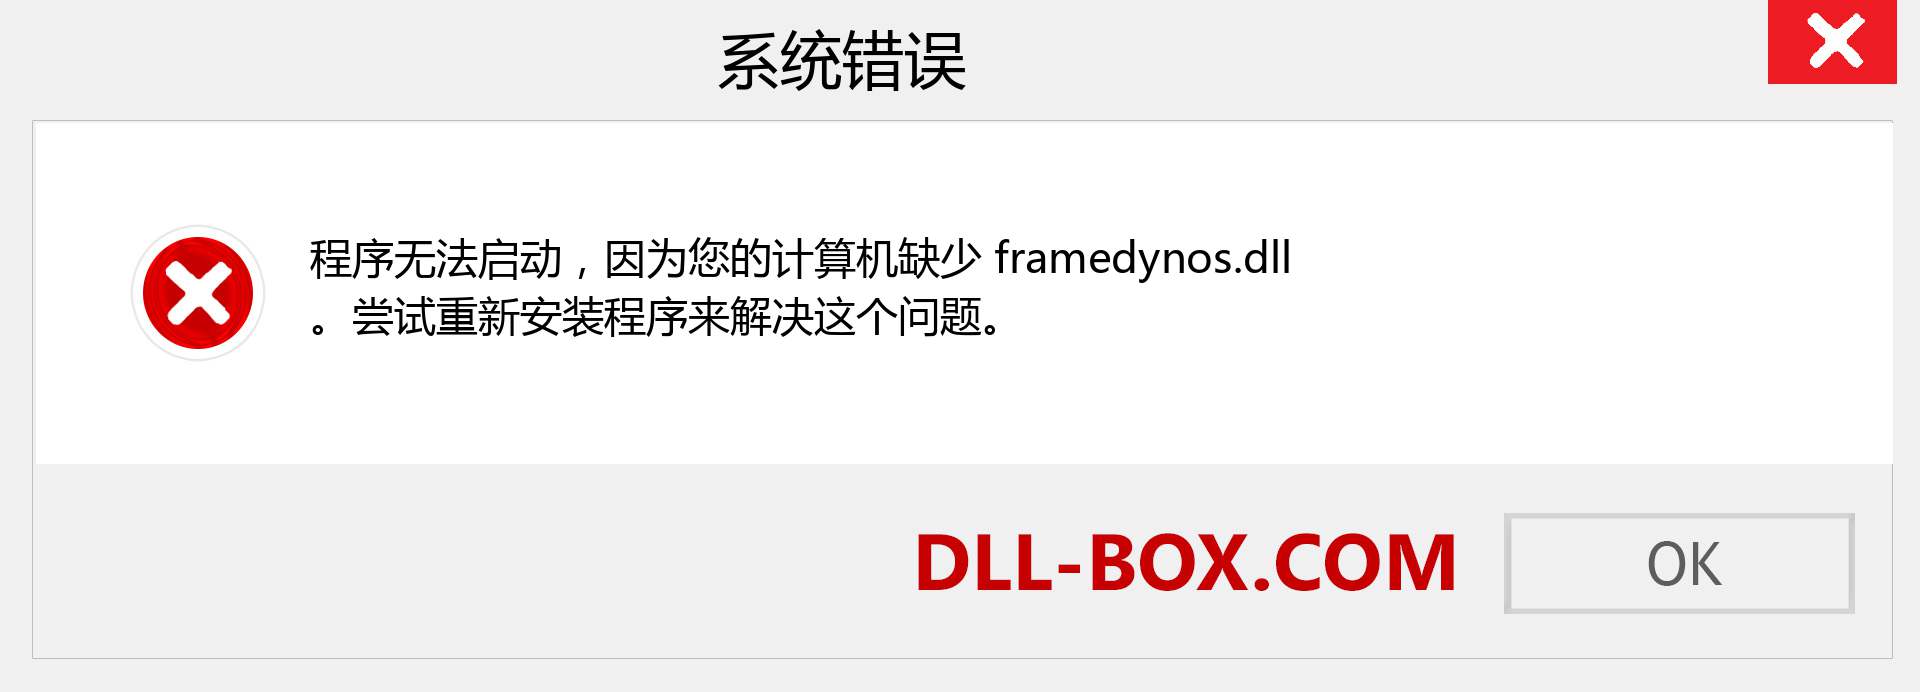 framedynos.dll 文件丢失？。 适用于 Windows 7、8、10 的下载 - 修复 Windows、照片、图像上的 framedynos dll 丢失错误